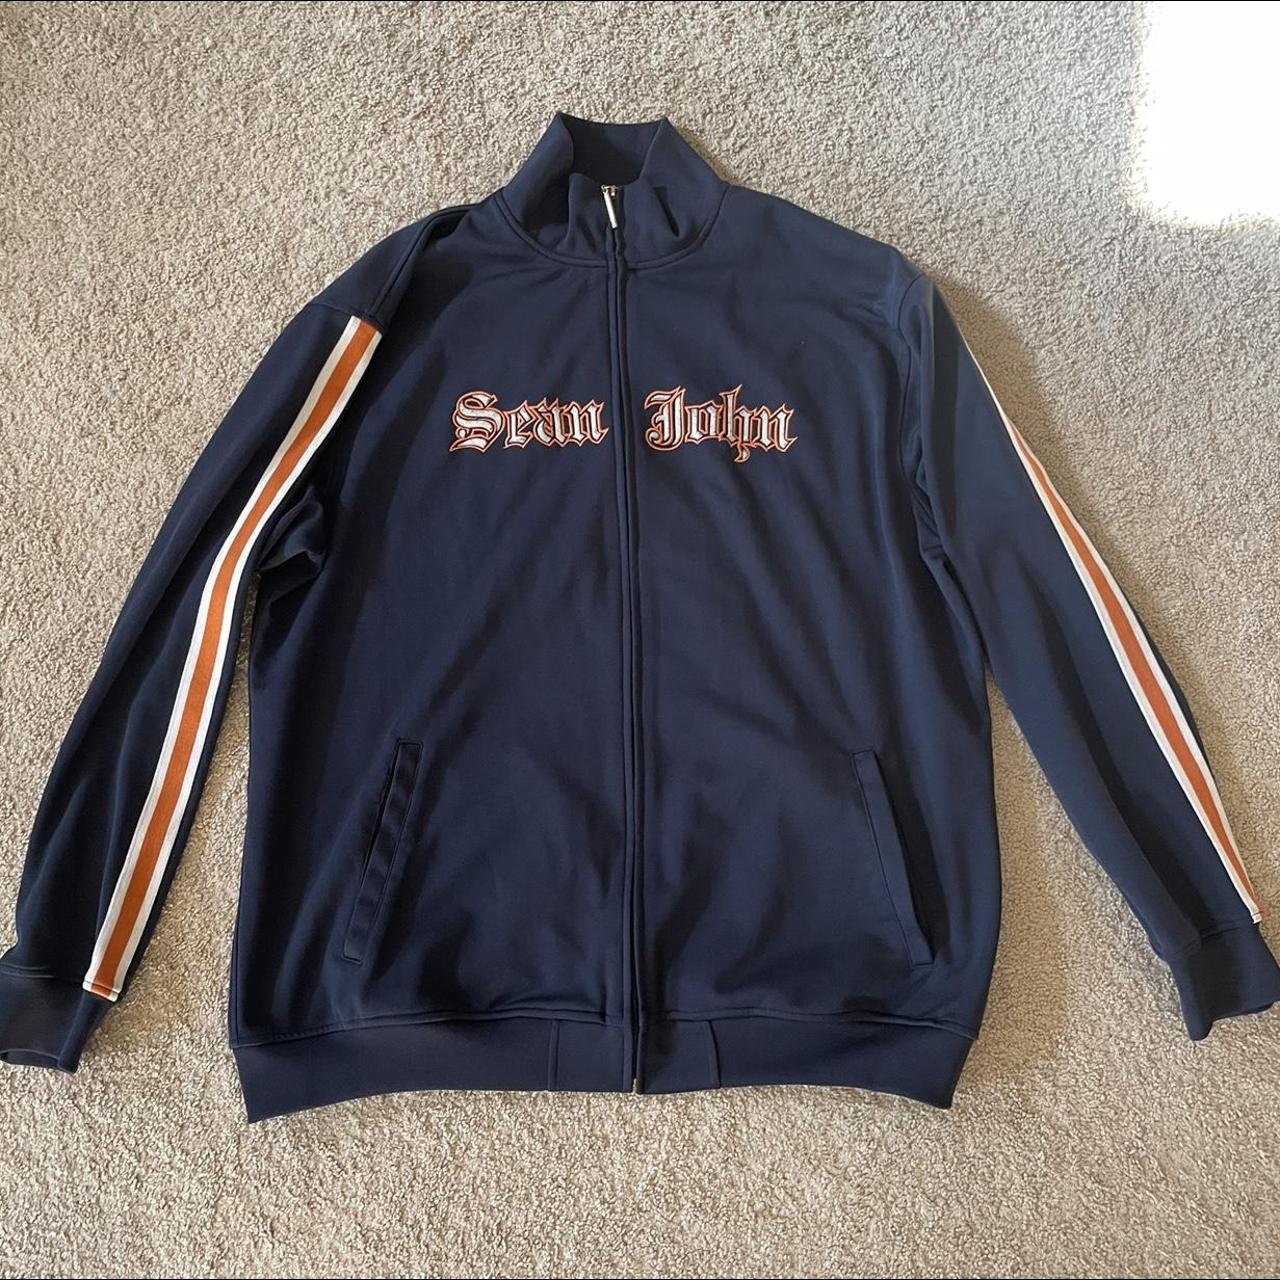 Sean John Men's Navy and Orange Jacket | Depop